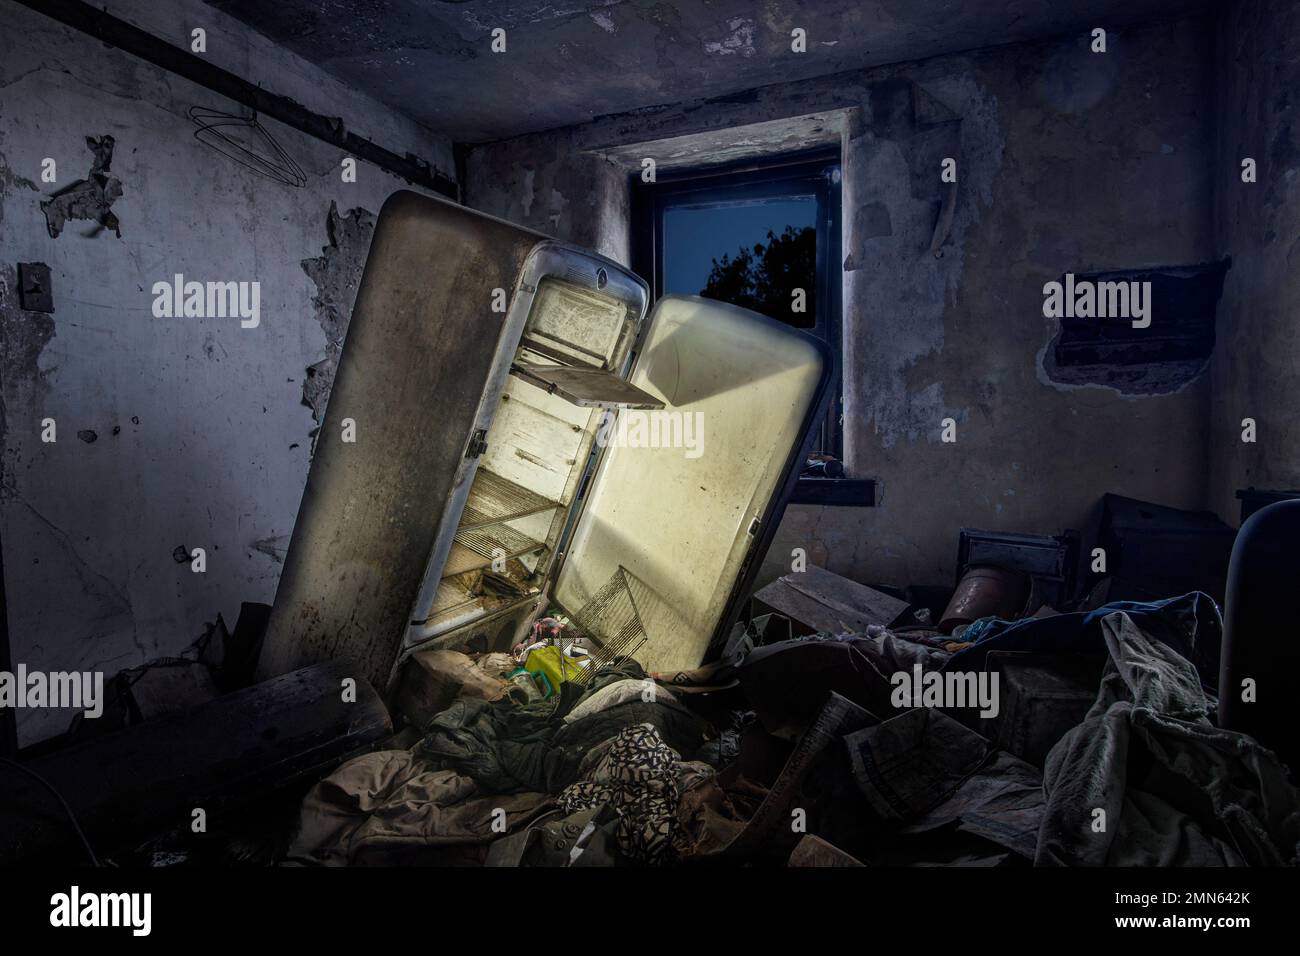 Frigorifero abbandonato con luce luminosa in camera piena di rifiuti, Pennsylvania, Stati Uniti Foto Stock